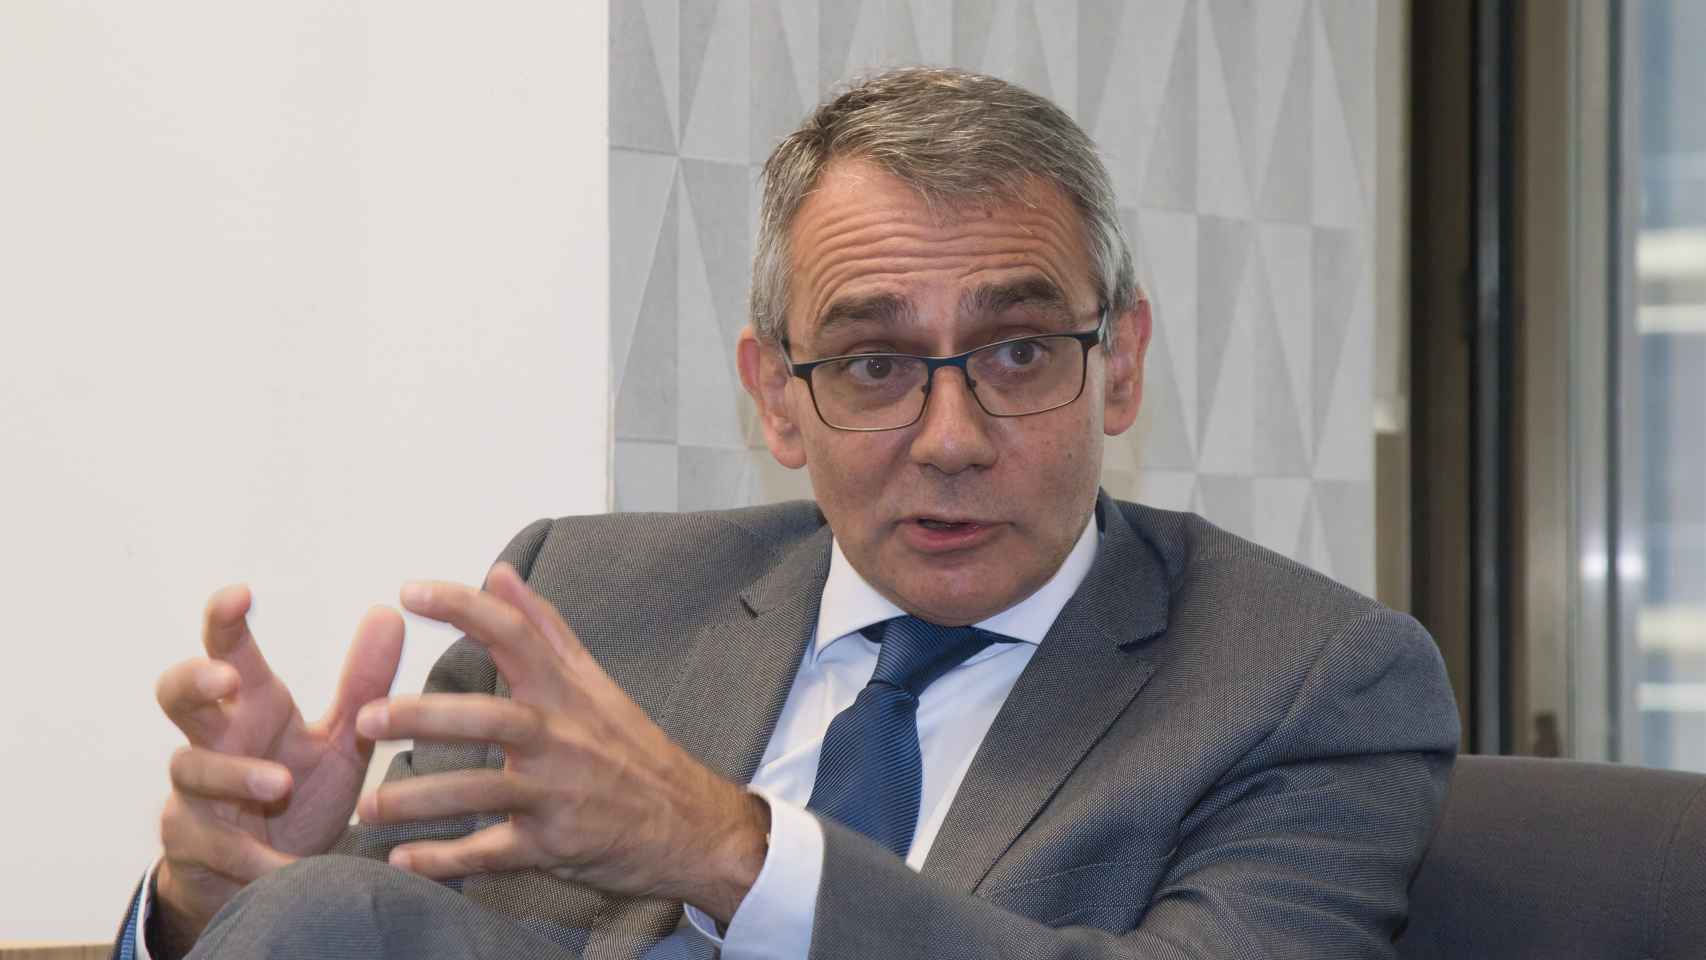 Alberto Martínez Lacambra, director general de Red.es